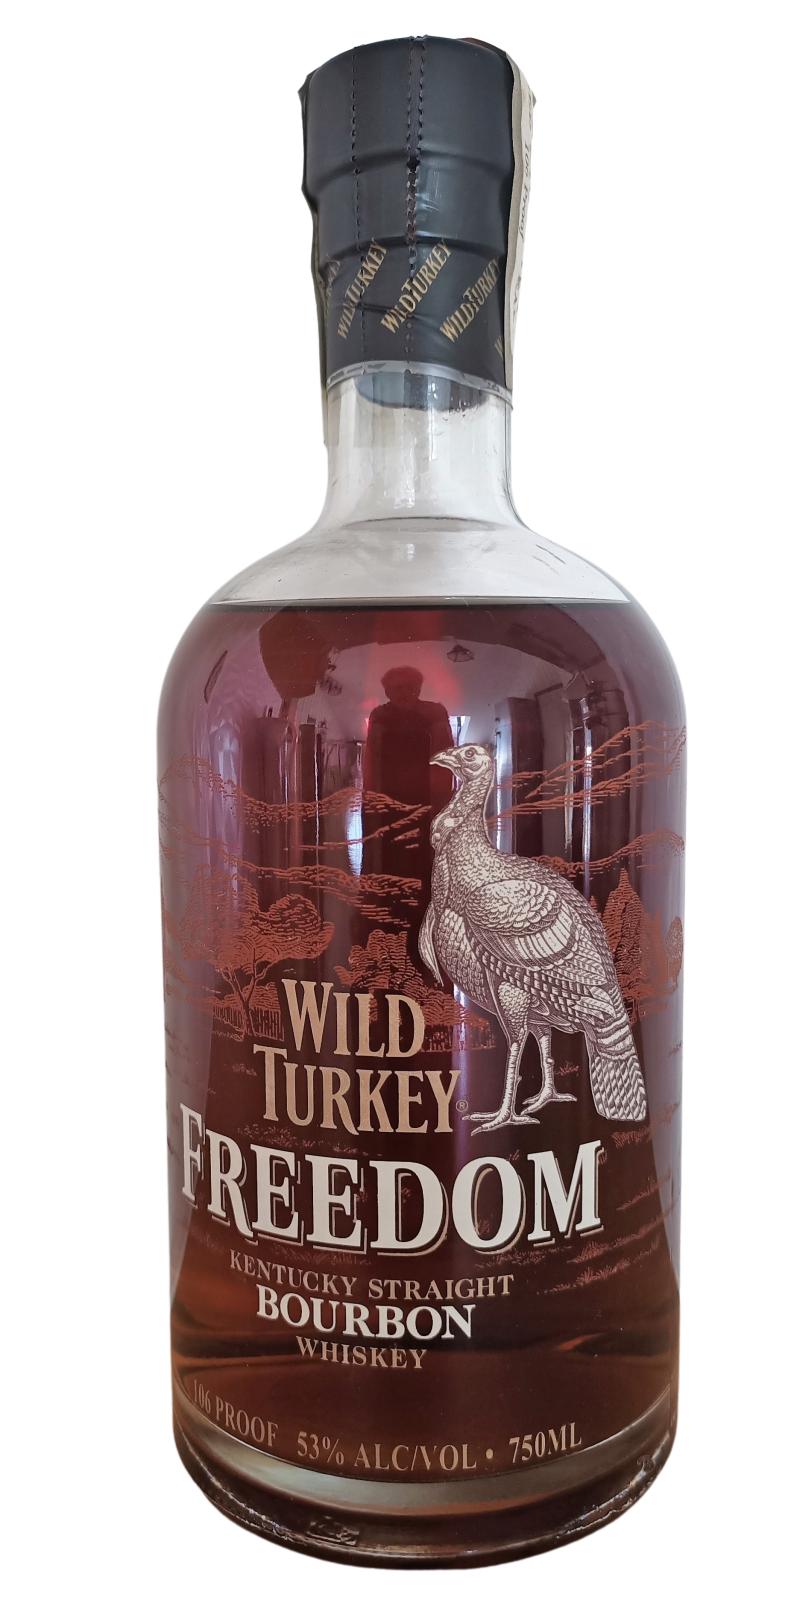 Wild Turkey Freedom